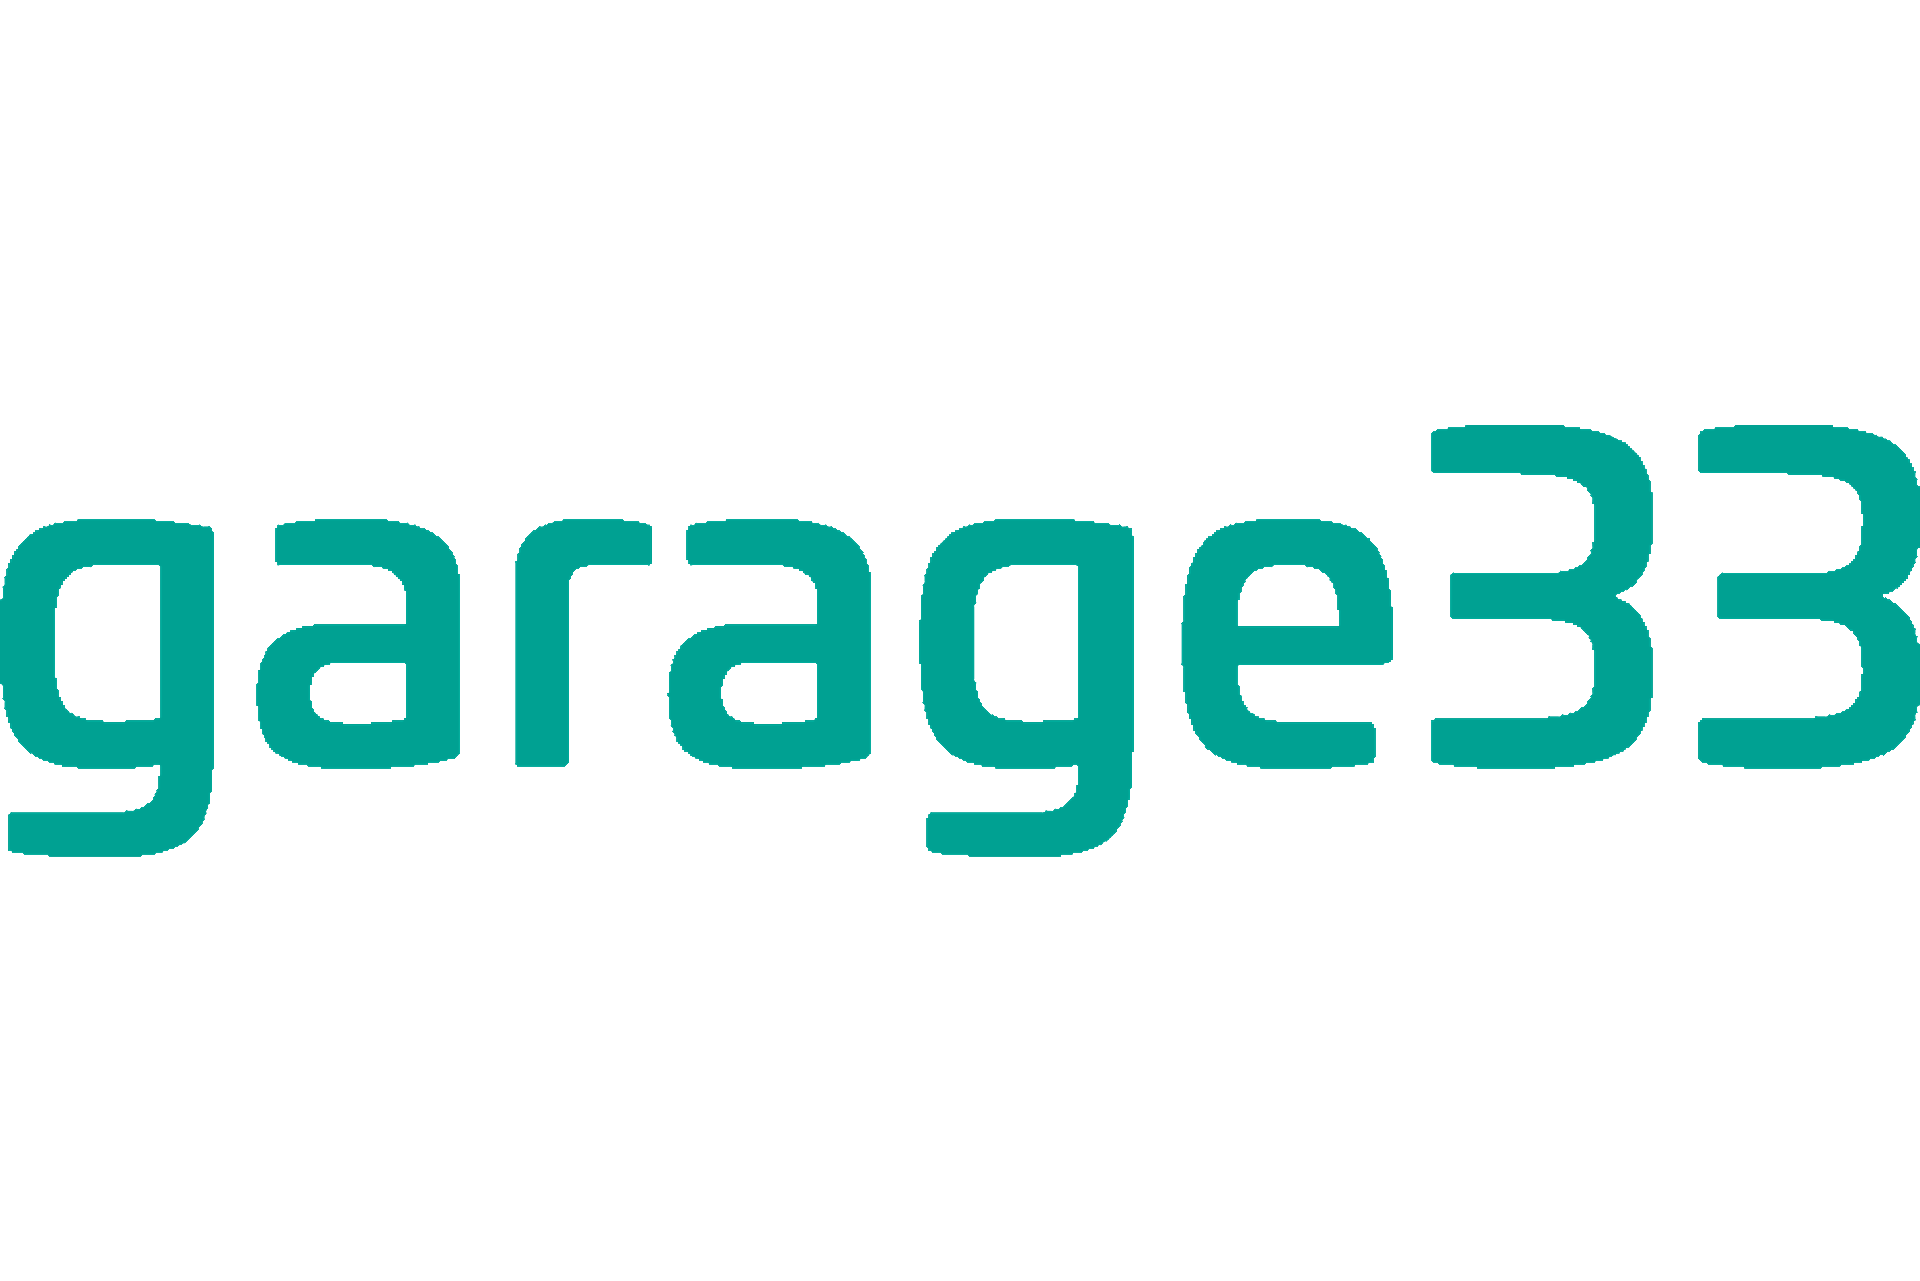 Logo of Garage33